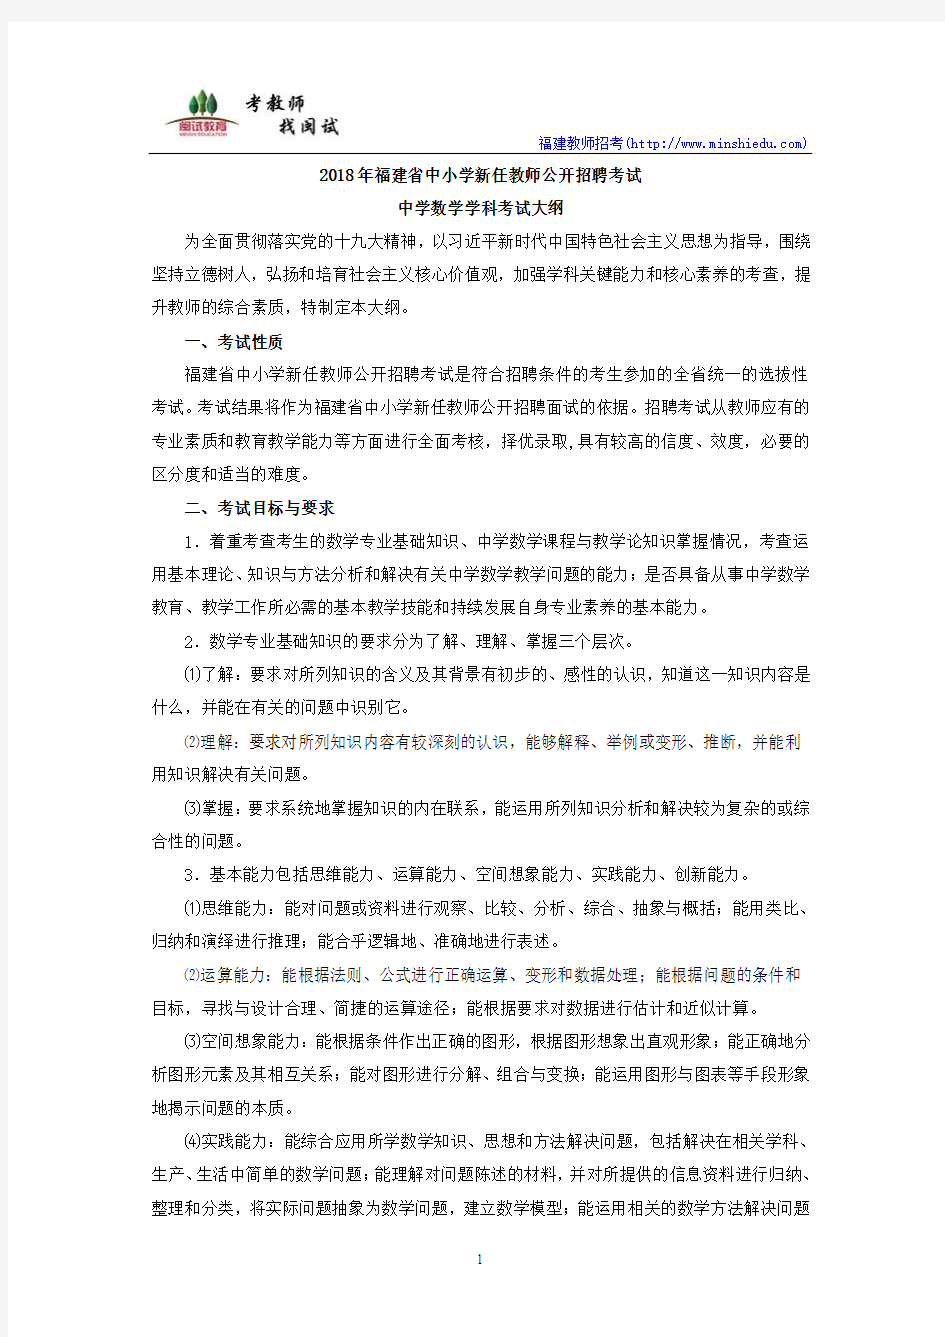 2018年福建省教师招聘考试中学数学考试大纲